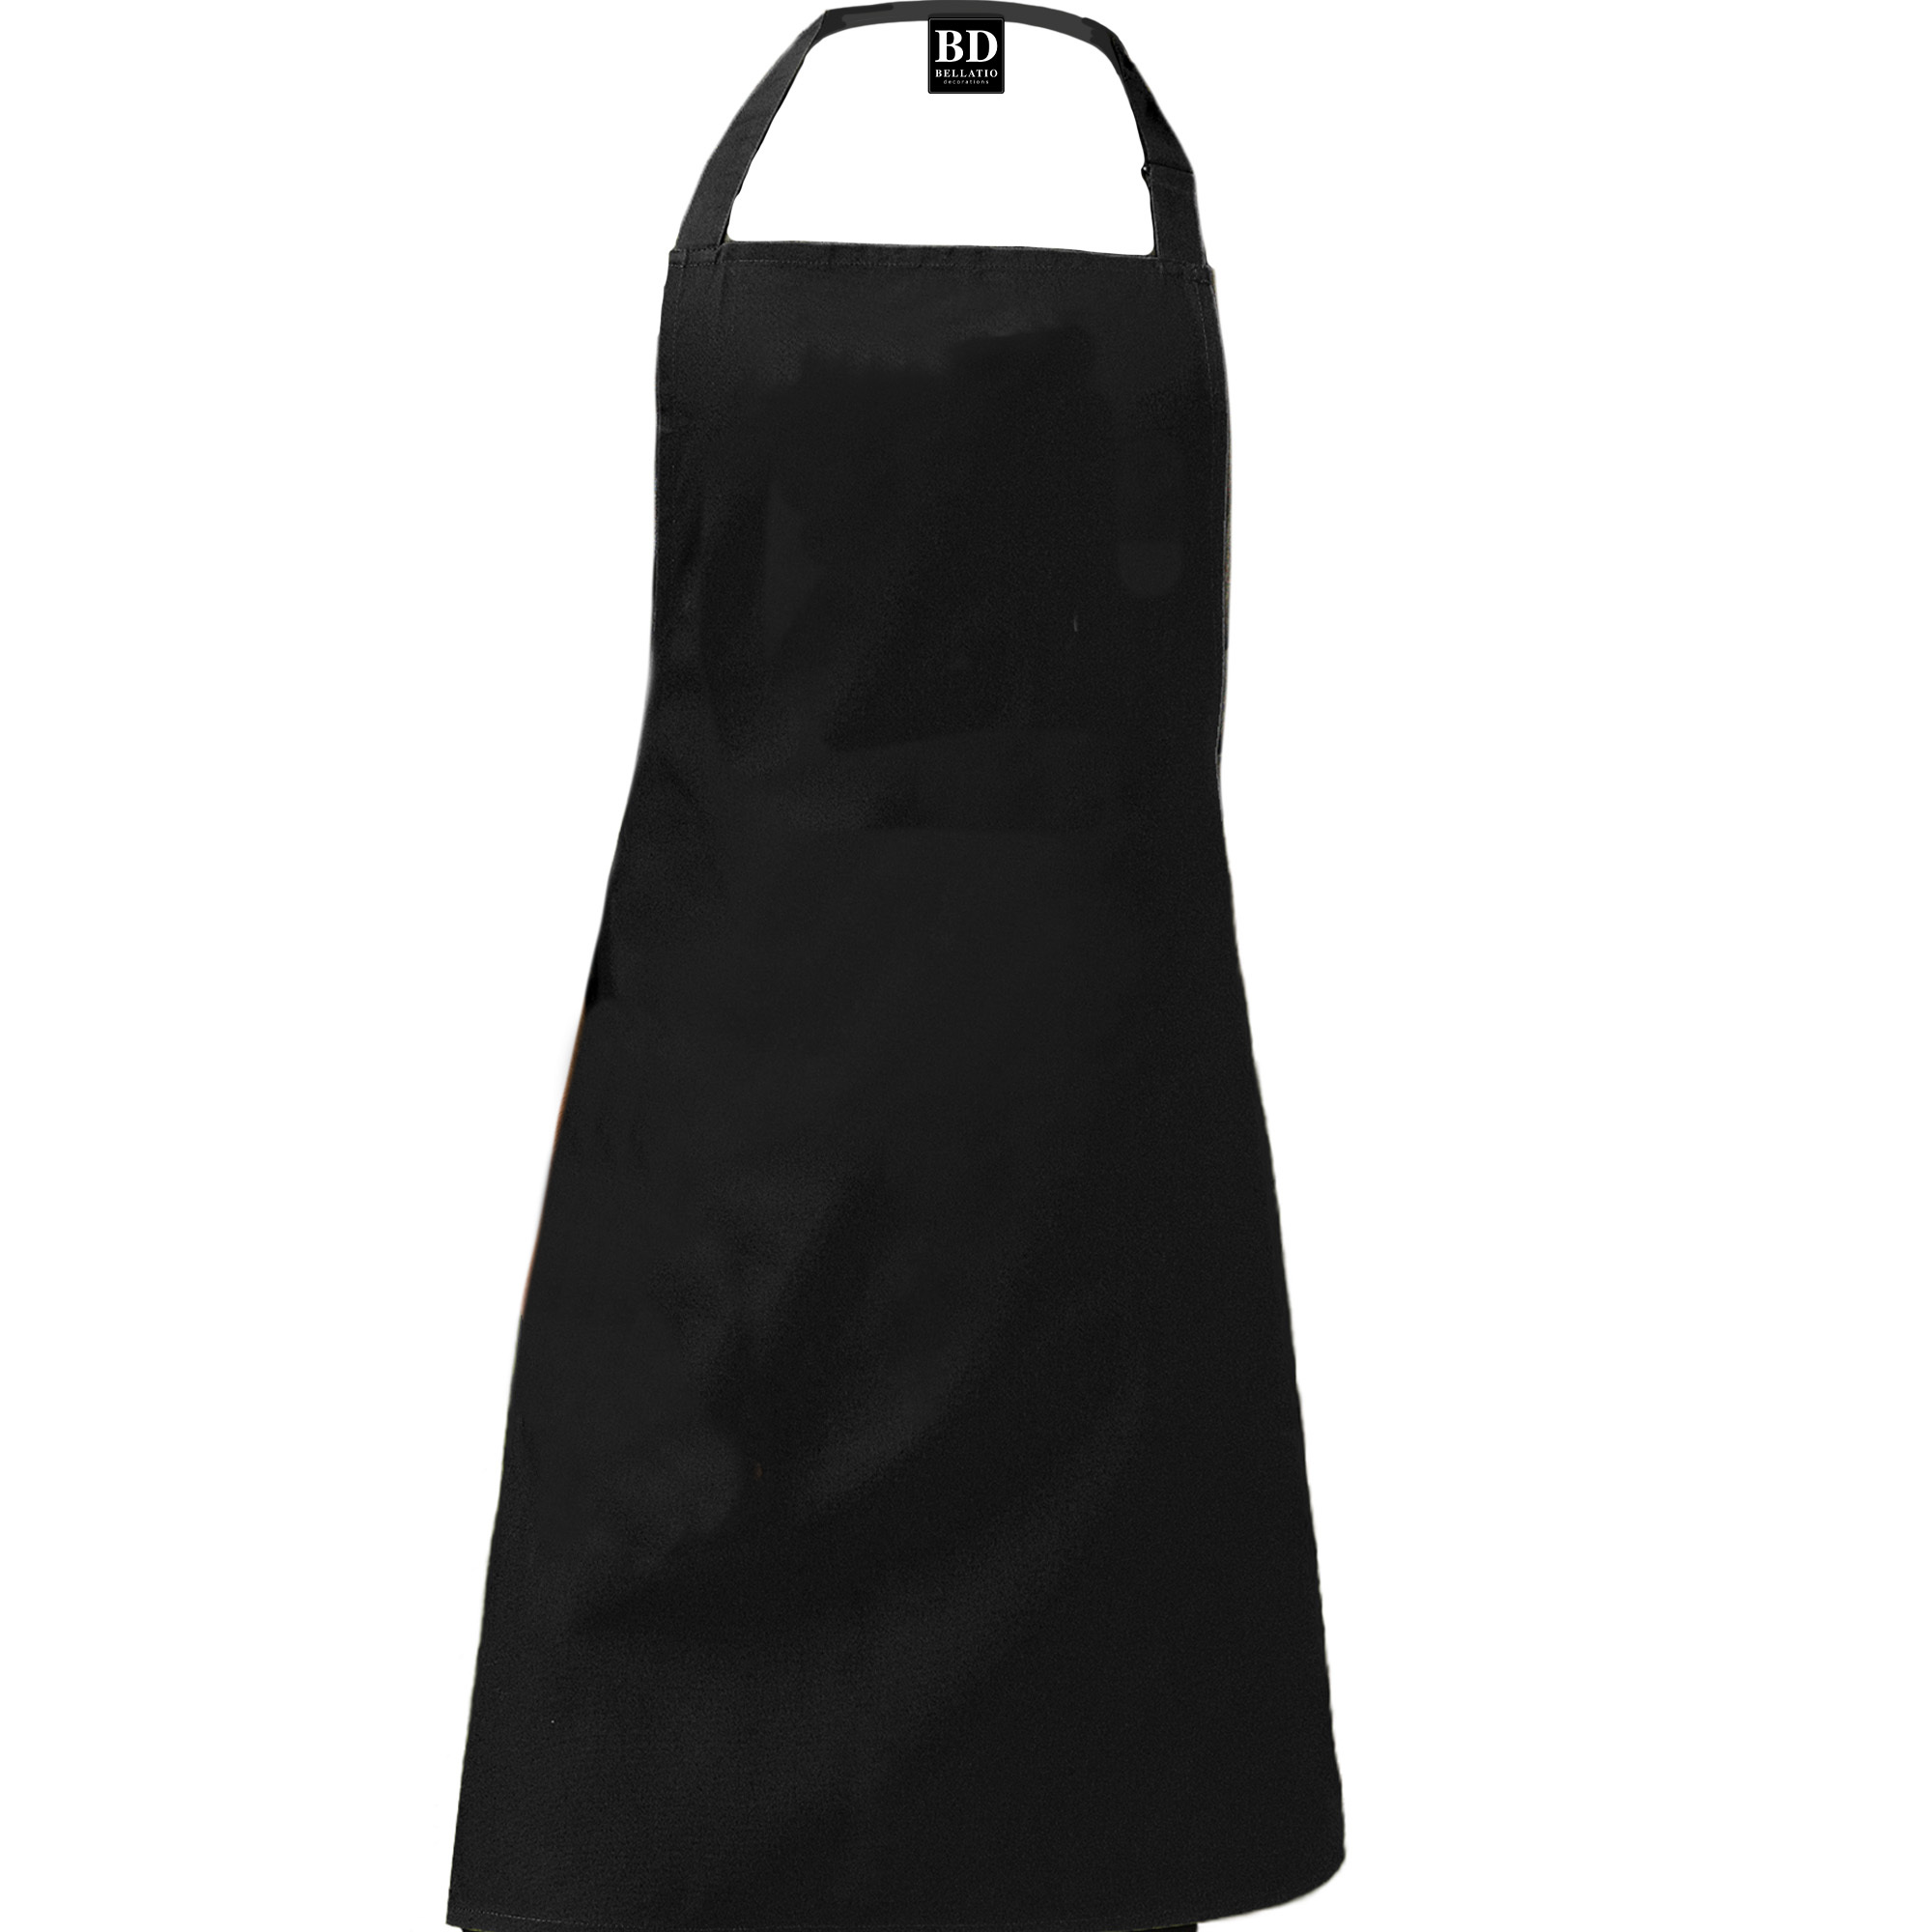 Queen of the kitchen Jara keukenschort/ barbecue schort zwart voor dames